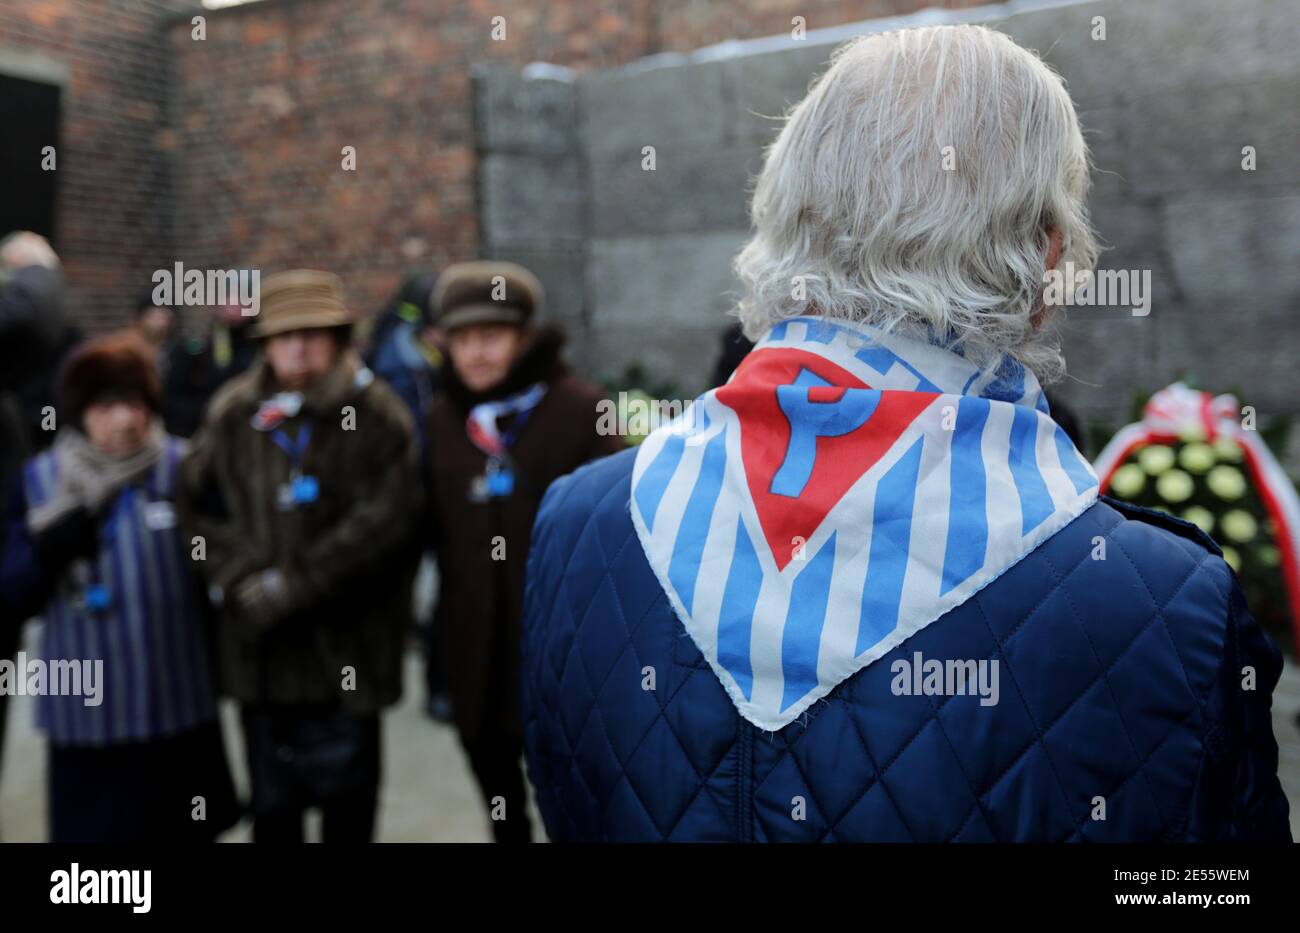 Oswiecim, Pologne - 27 janvier 2017 : 73 e anniversaire de la libération d'Auschwitz-Birkenau. Le survivant visite le site d'extermination d'Auschwitz. Banque D'Images